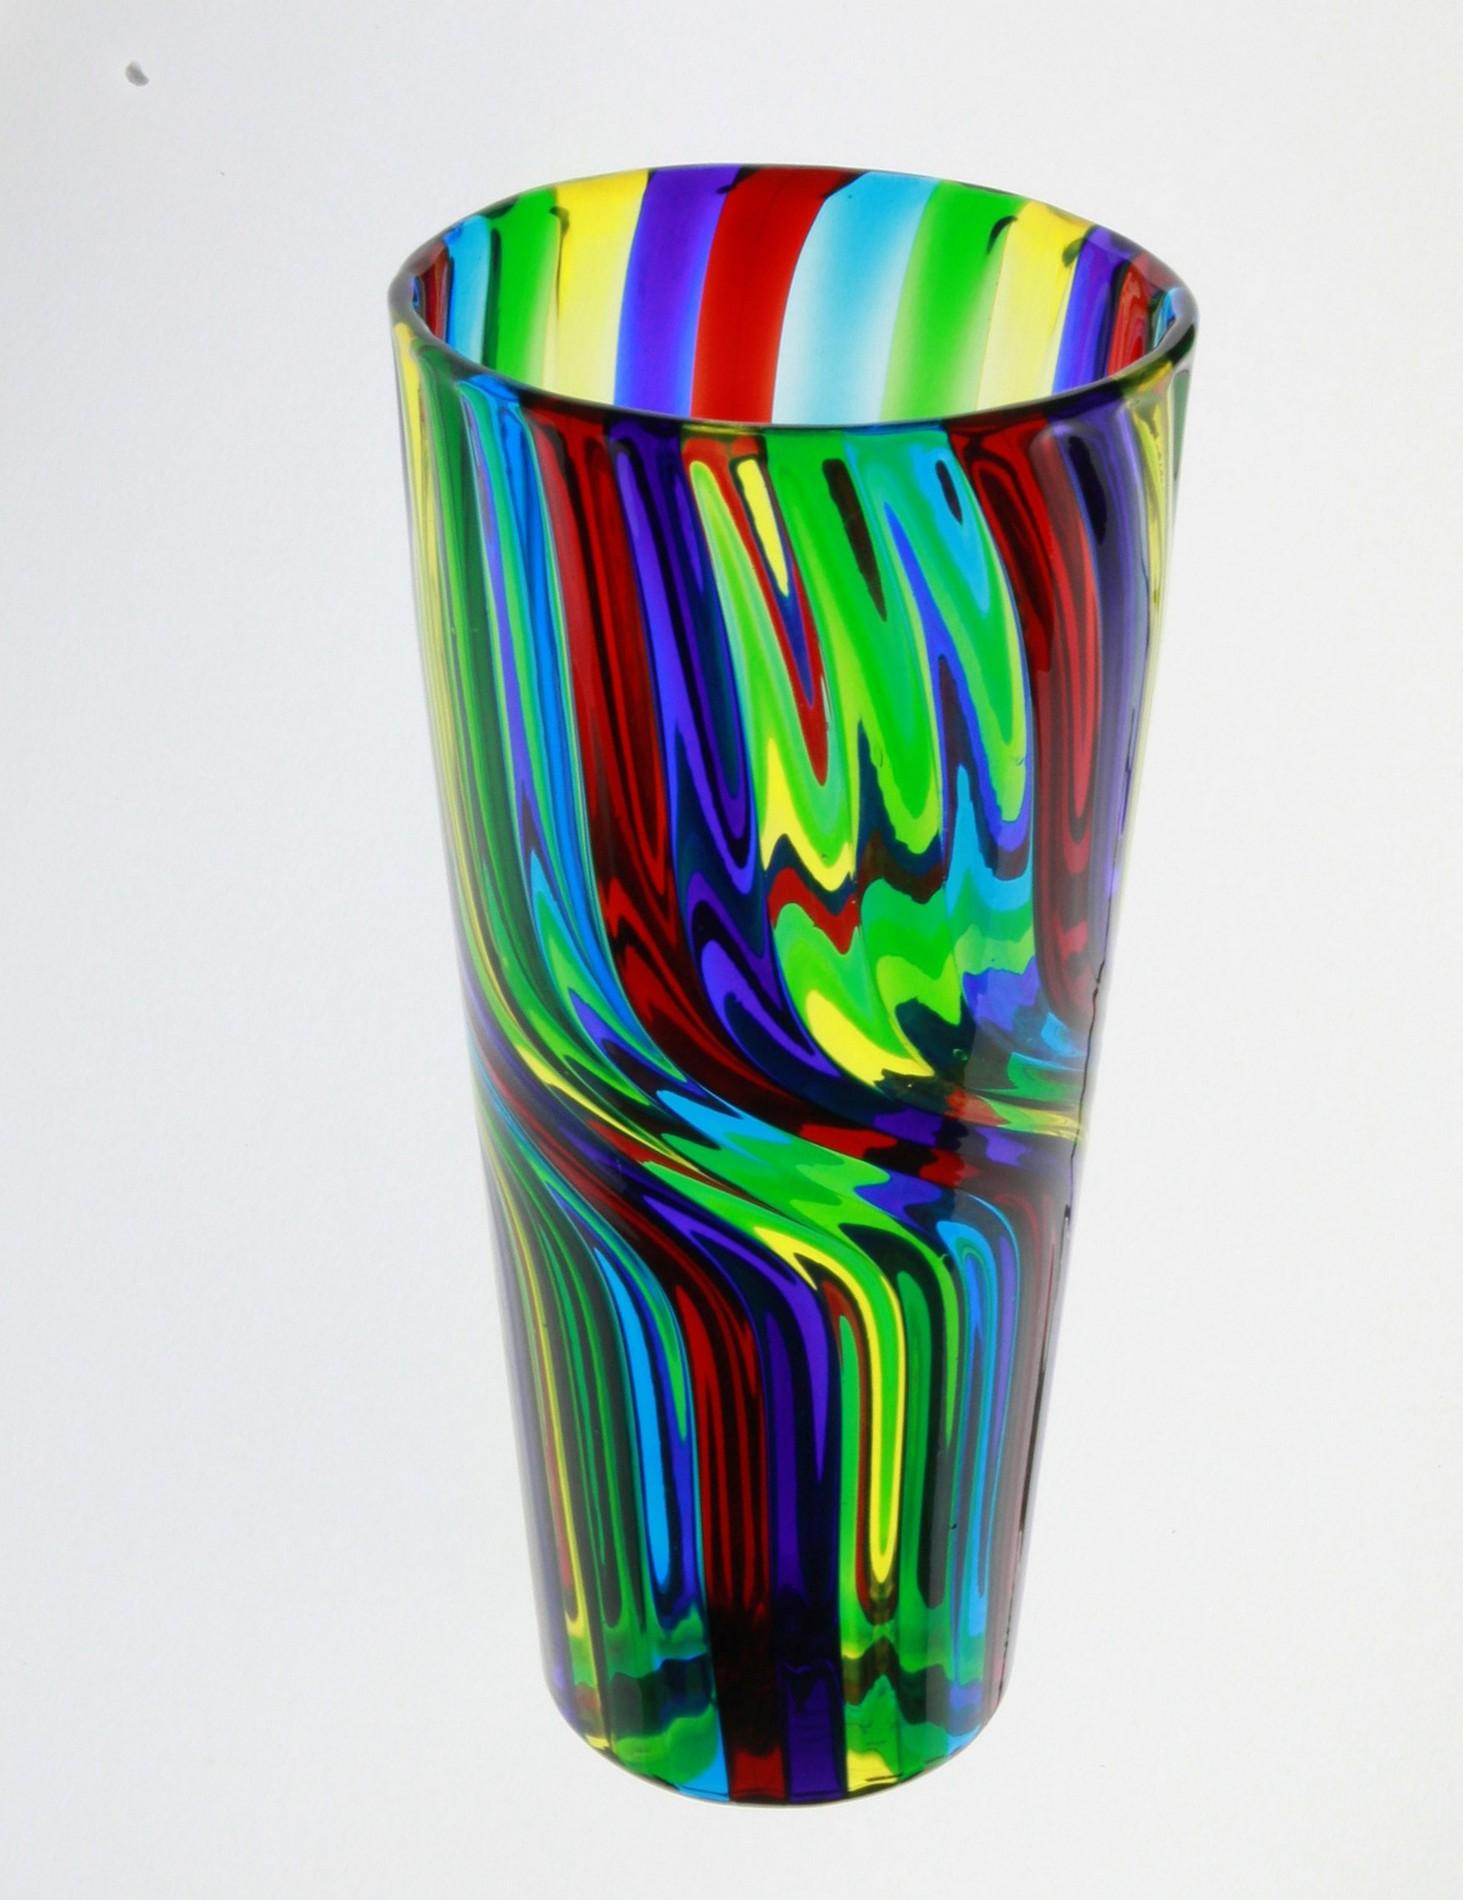 Diese Vase ist ein wahres Kunstwerk. Sie zeichnet sich durch eine kräftige Farbpalette aus und erzeugt ein schönes Spiel mit dem Licht. Bei der Herstellung wird das Glas vor dem Blasen noch einmal erhitzt, um die gewünschte Weichheit zu erreichen,